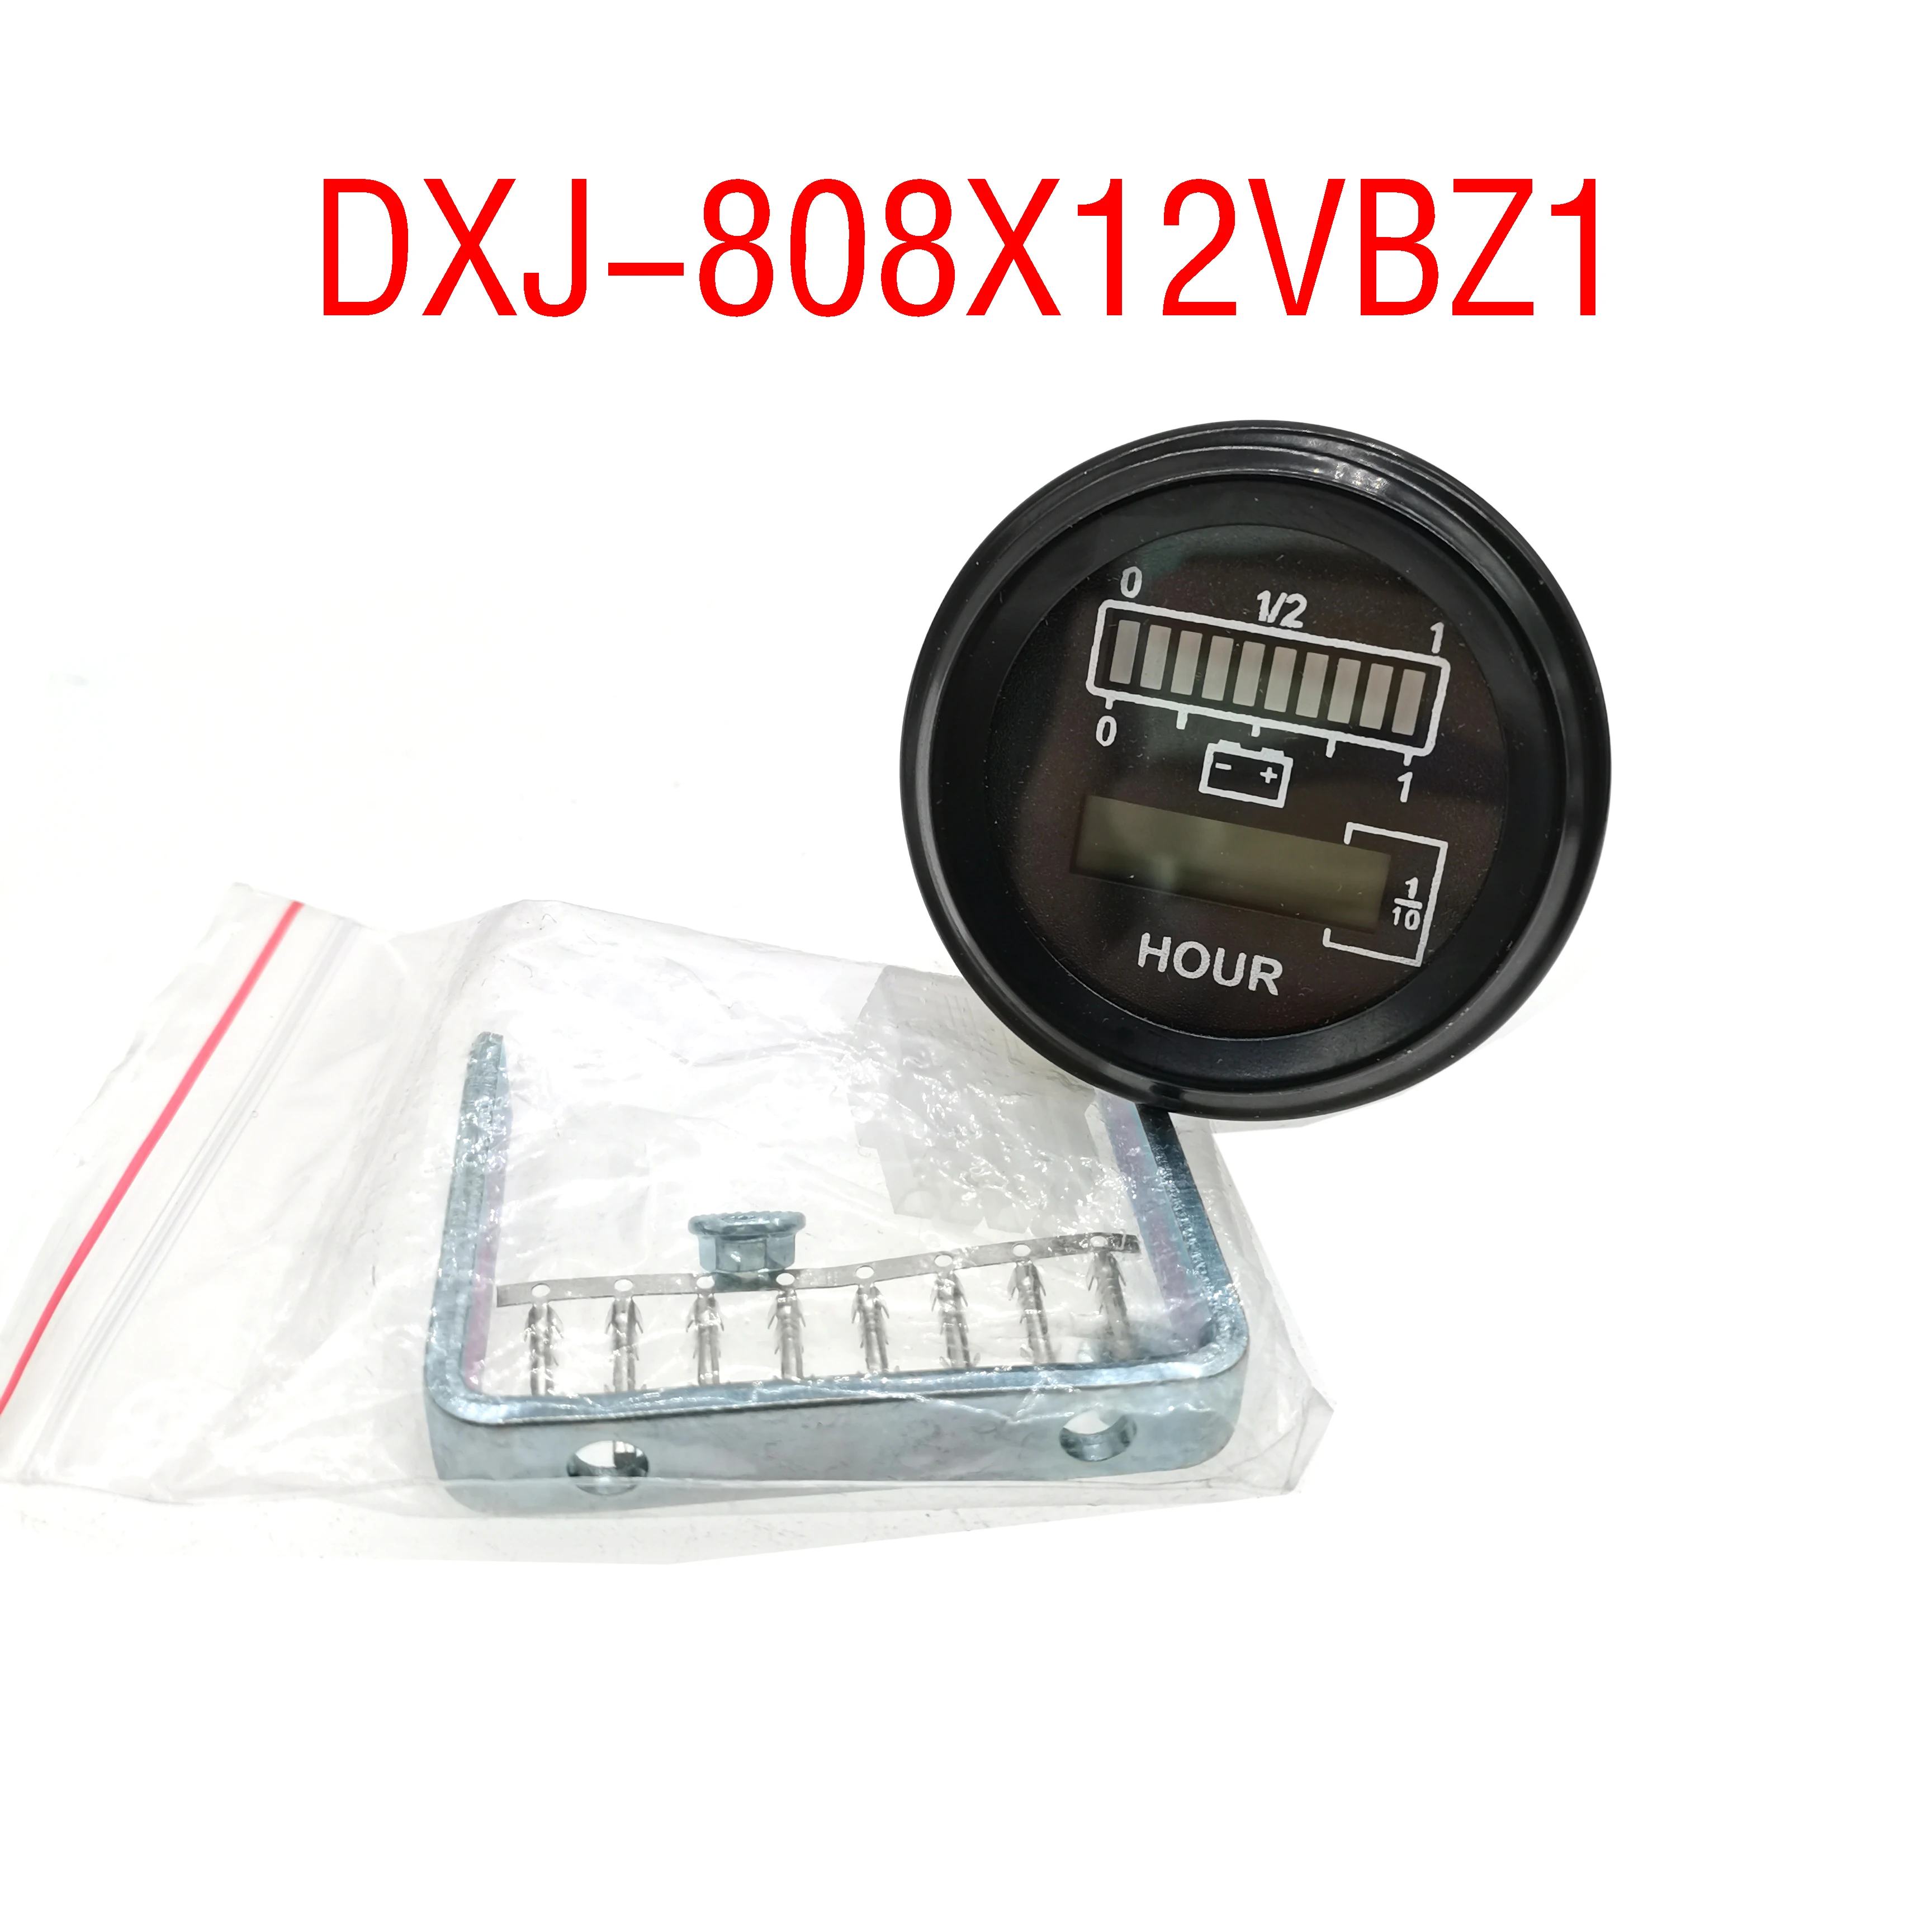 Ponudbo Doma narejenih Krog 12V 803 Indikator Baterije Ure Meter DXJ-808Y12BZ1/DXJ-808X12VBZ1